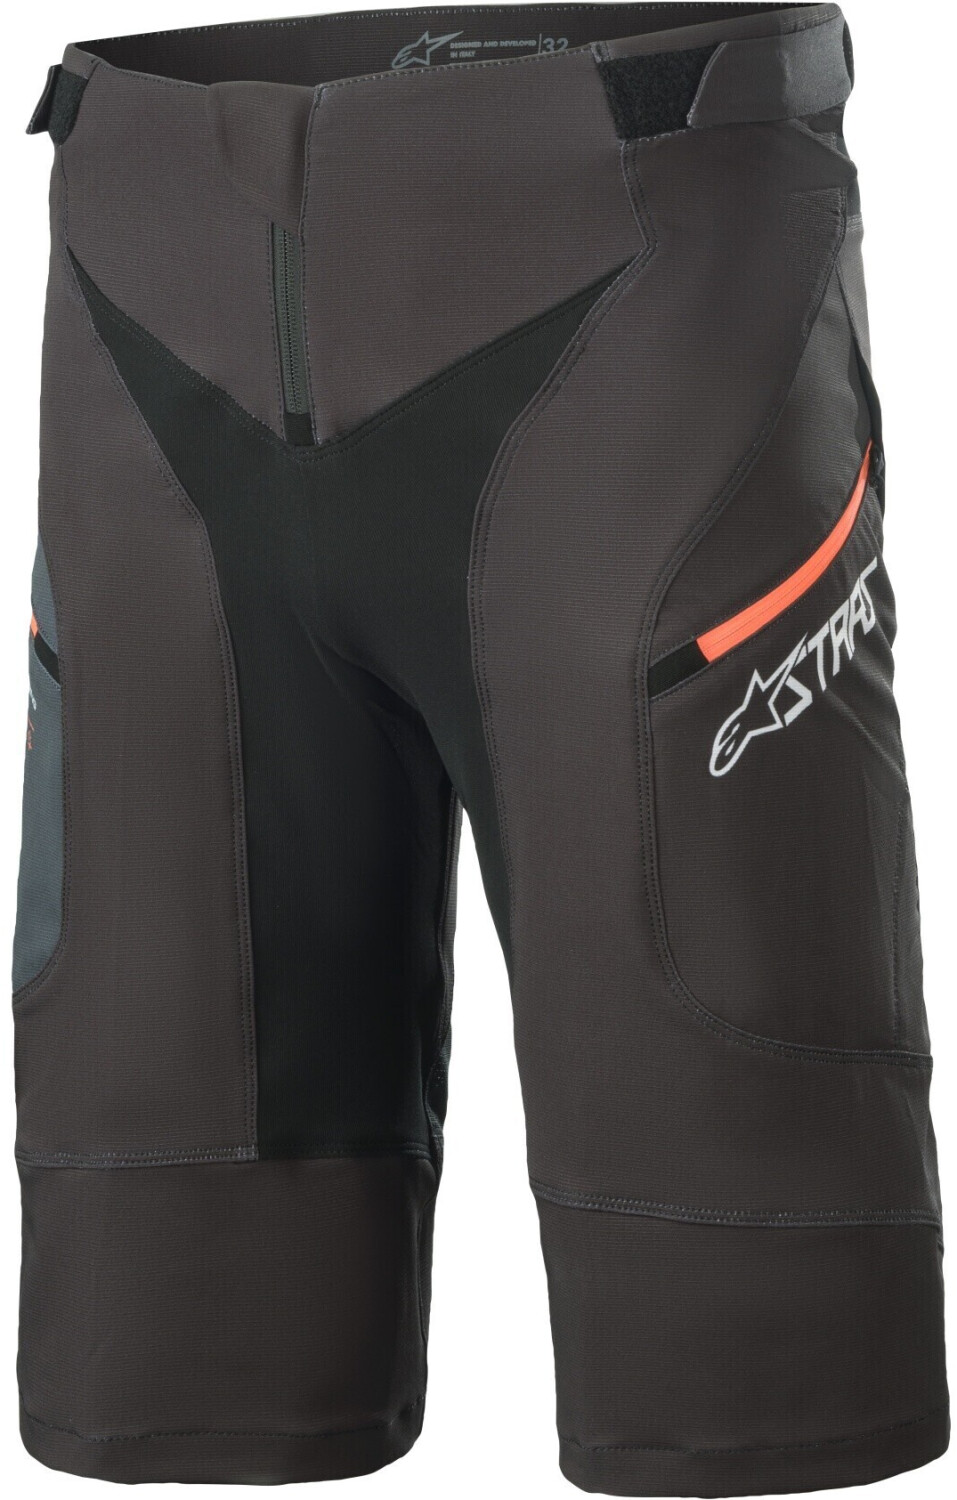 Photos - Cycling Clothing Alpinestars Drop 8.0 Shorts black/coral 